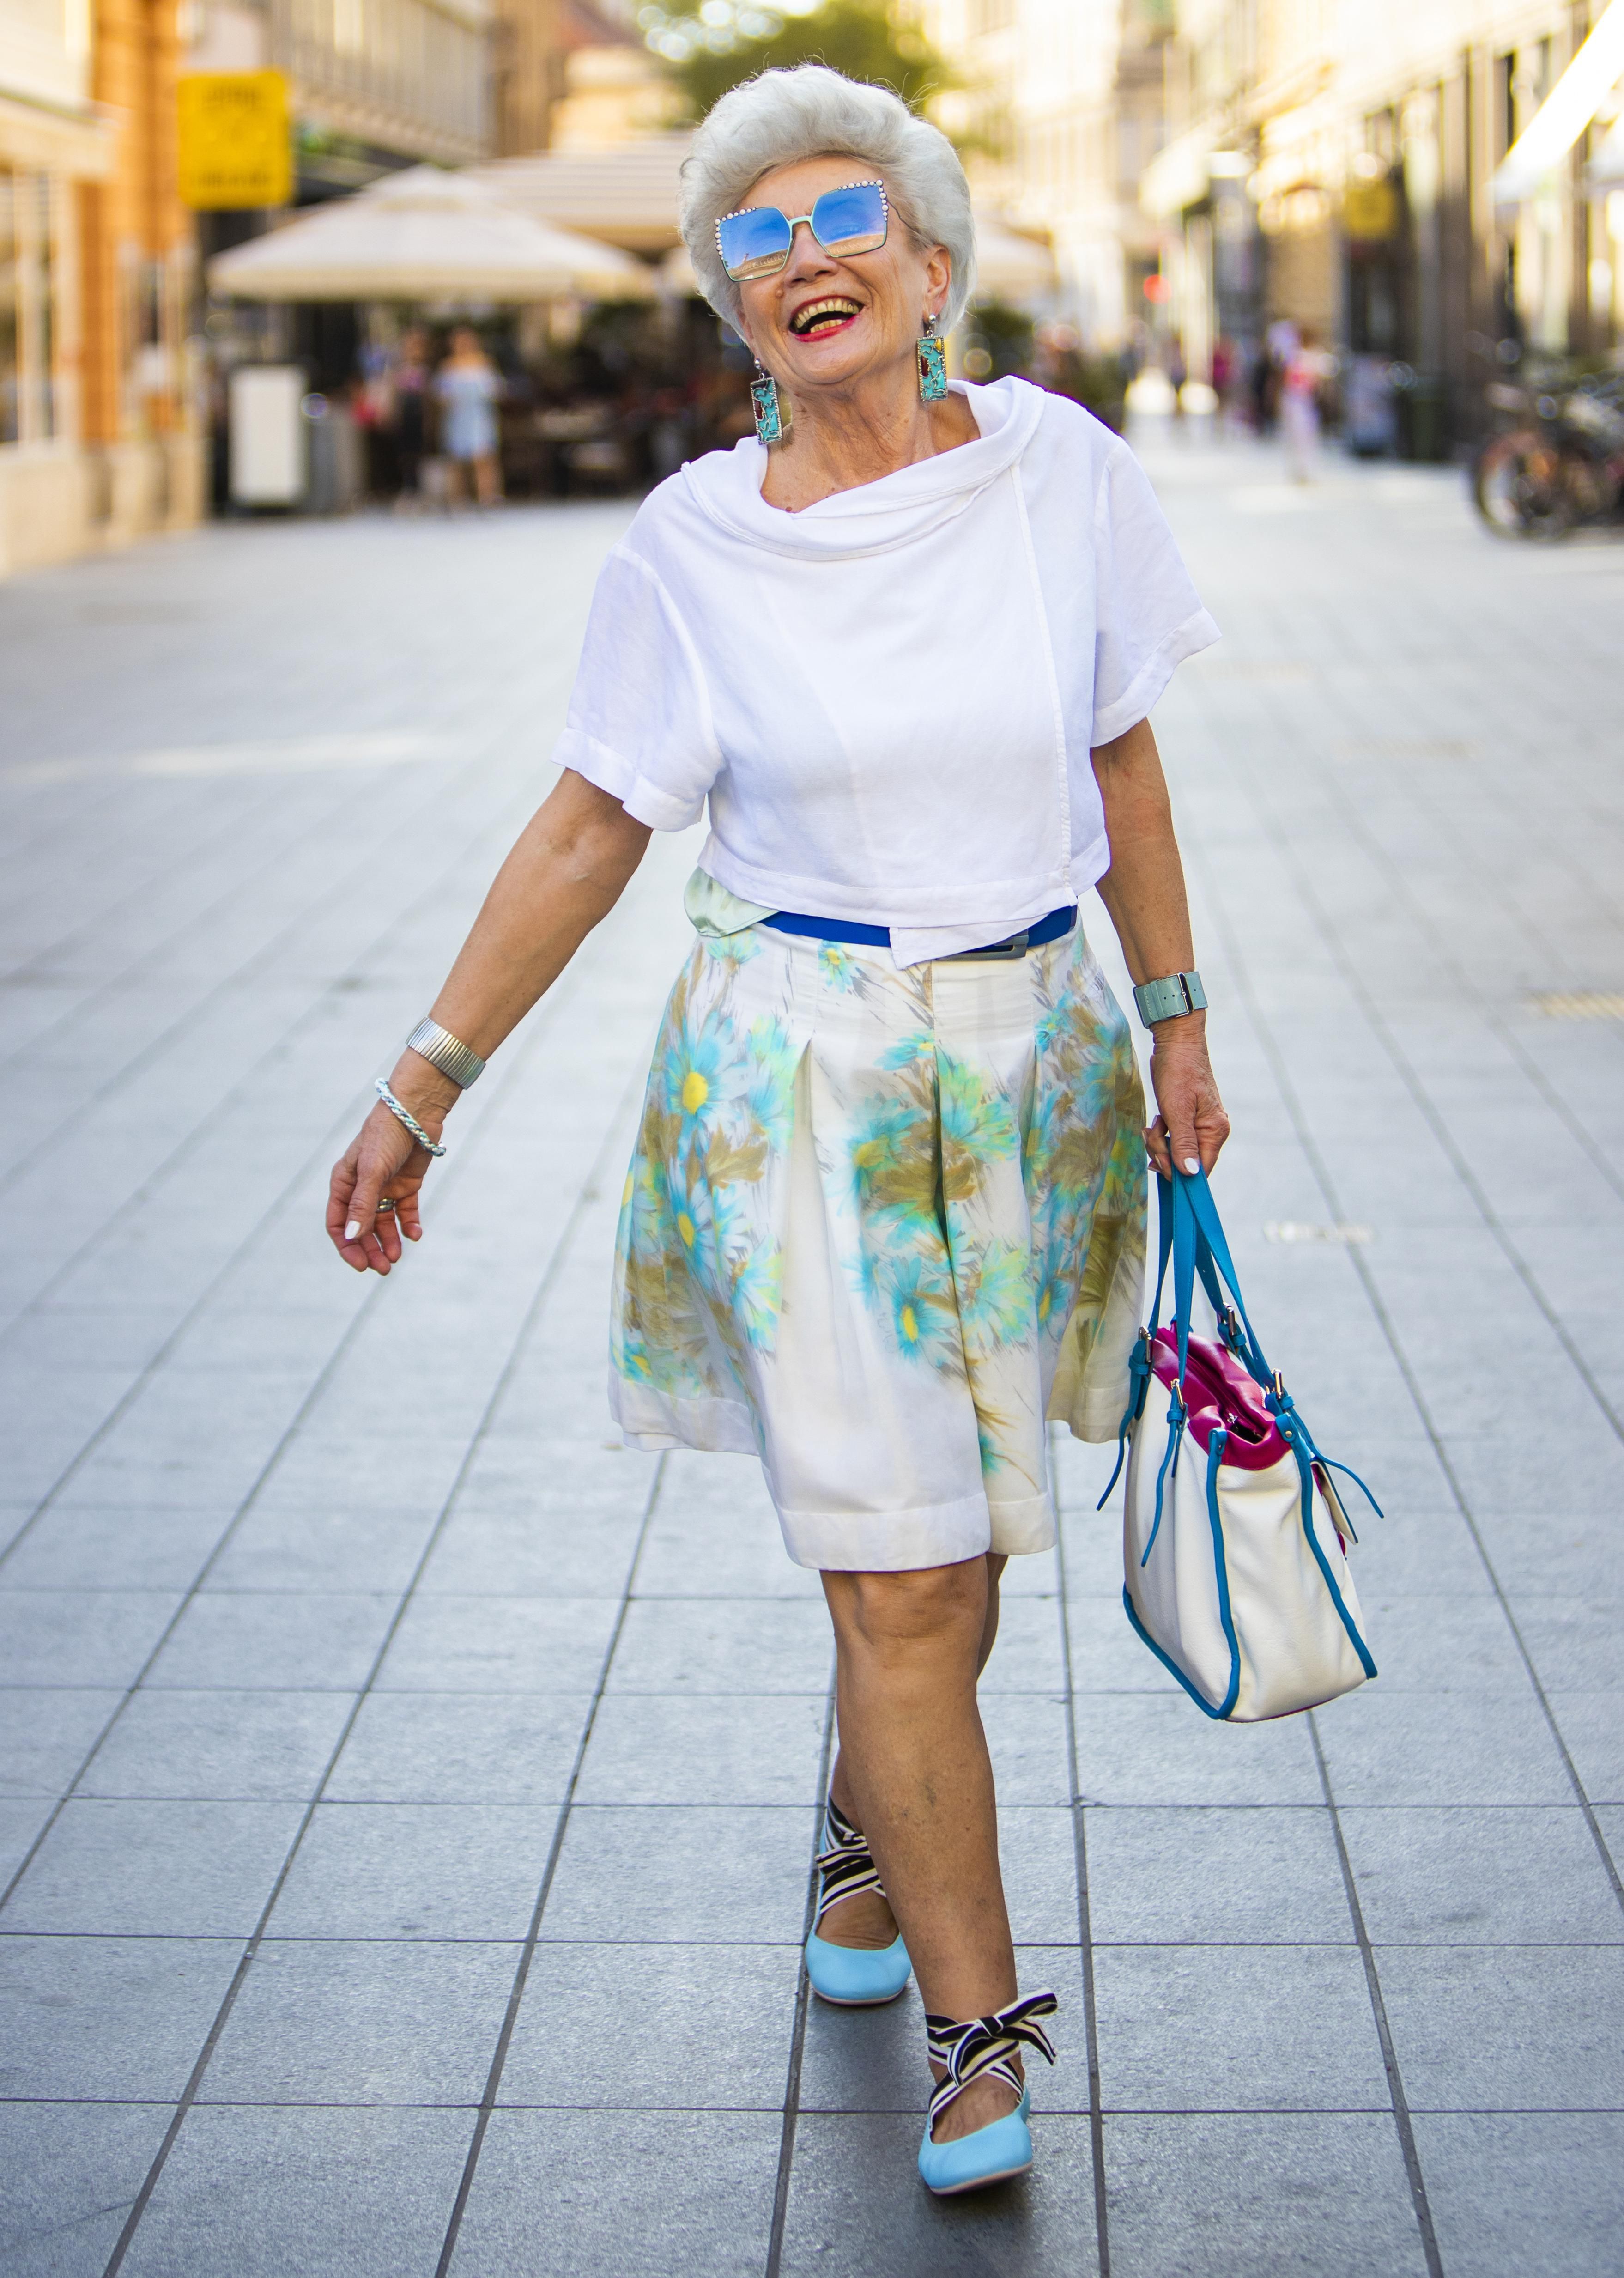 Umirovljenica i model: "Radim sve poslove kao baka, ali uvijek moram biti spremna ako me zovu na casting"